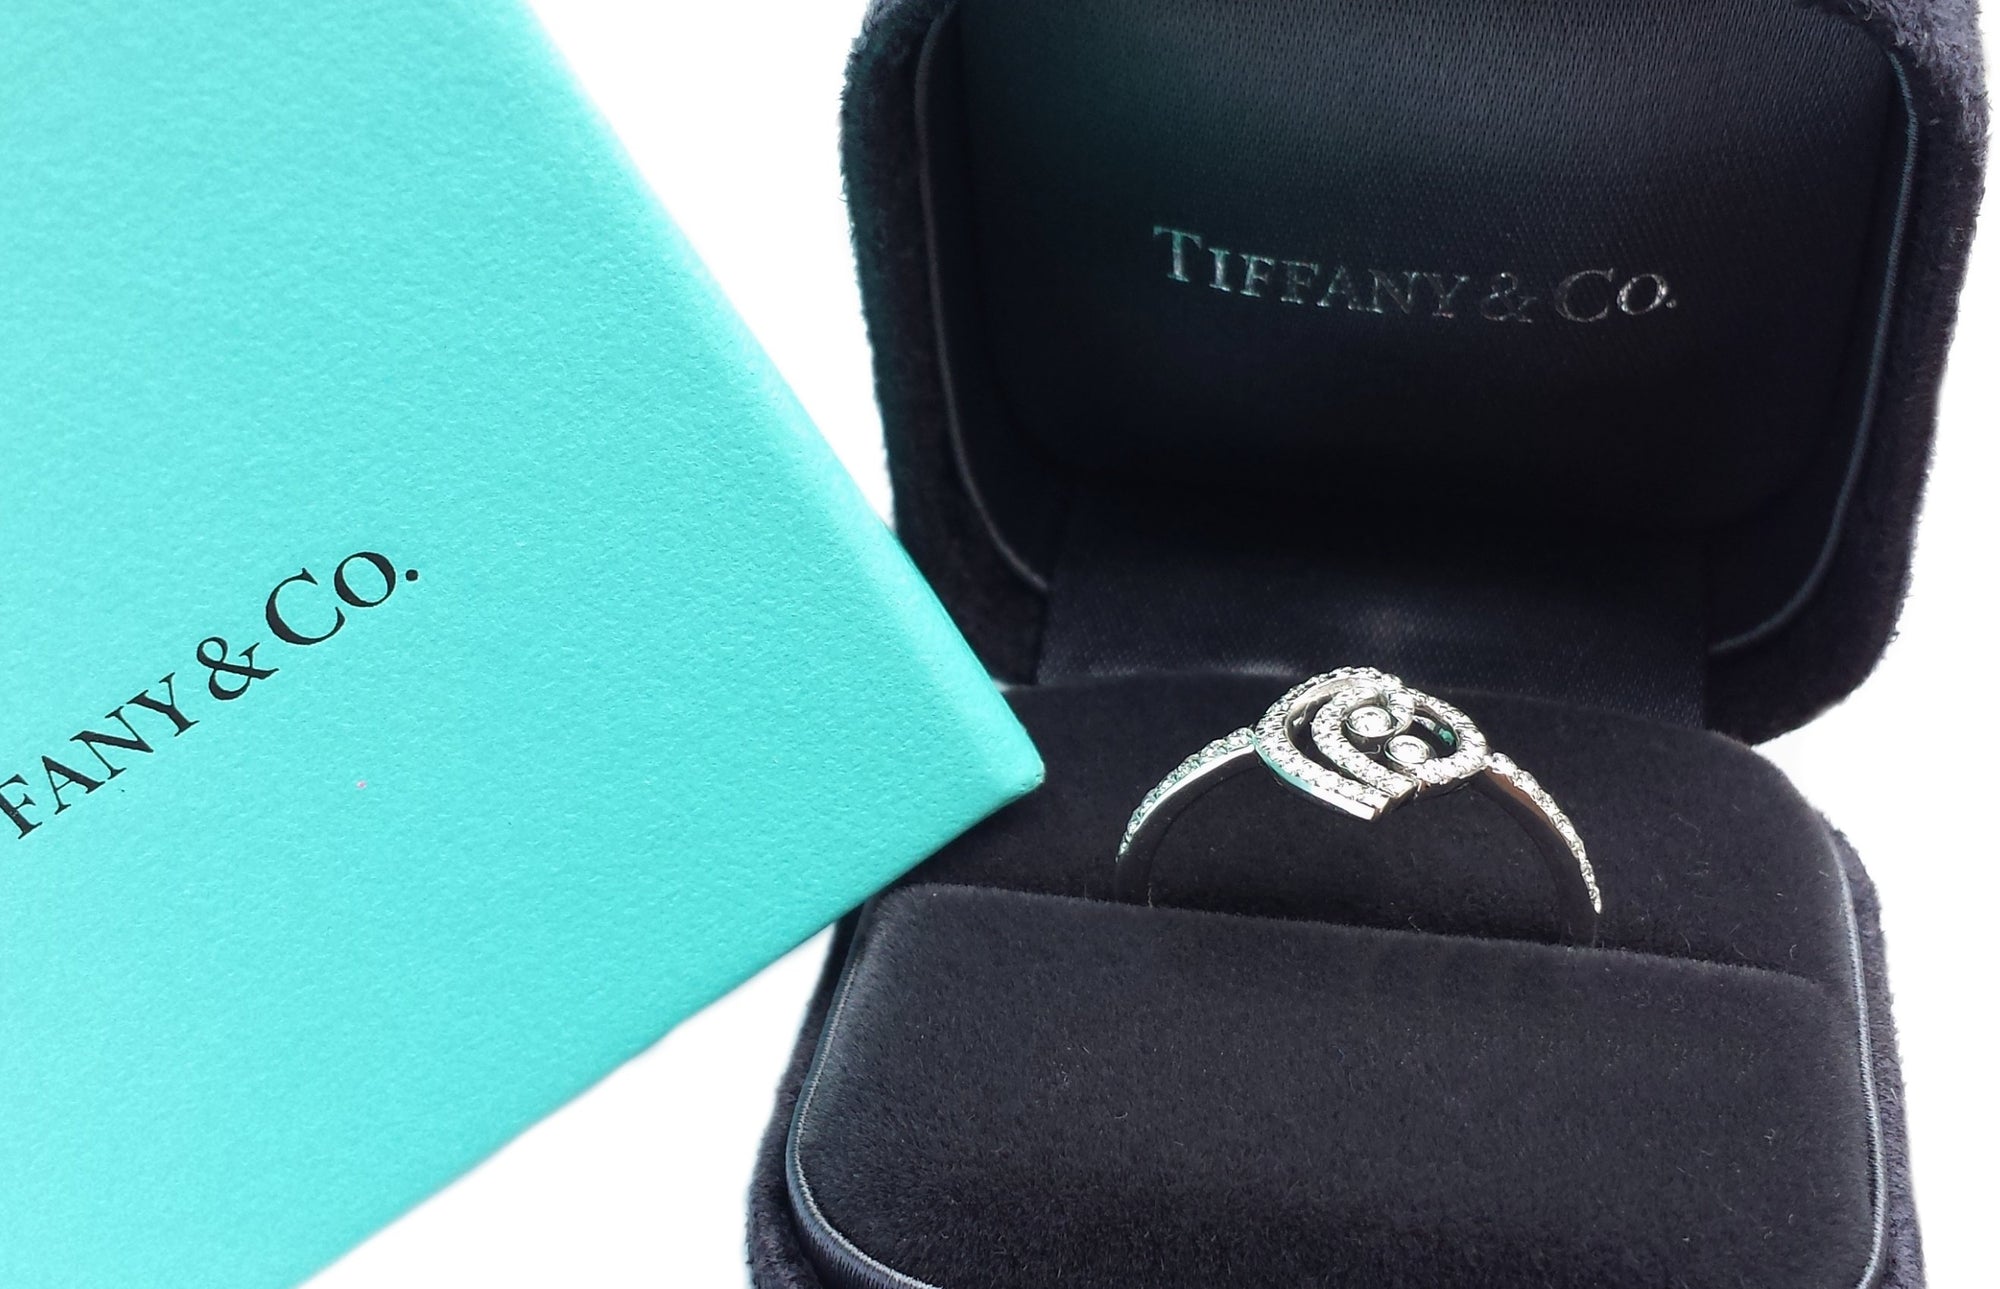 Tiffany & Co Enchant Heart Diamond Ring PT 950